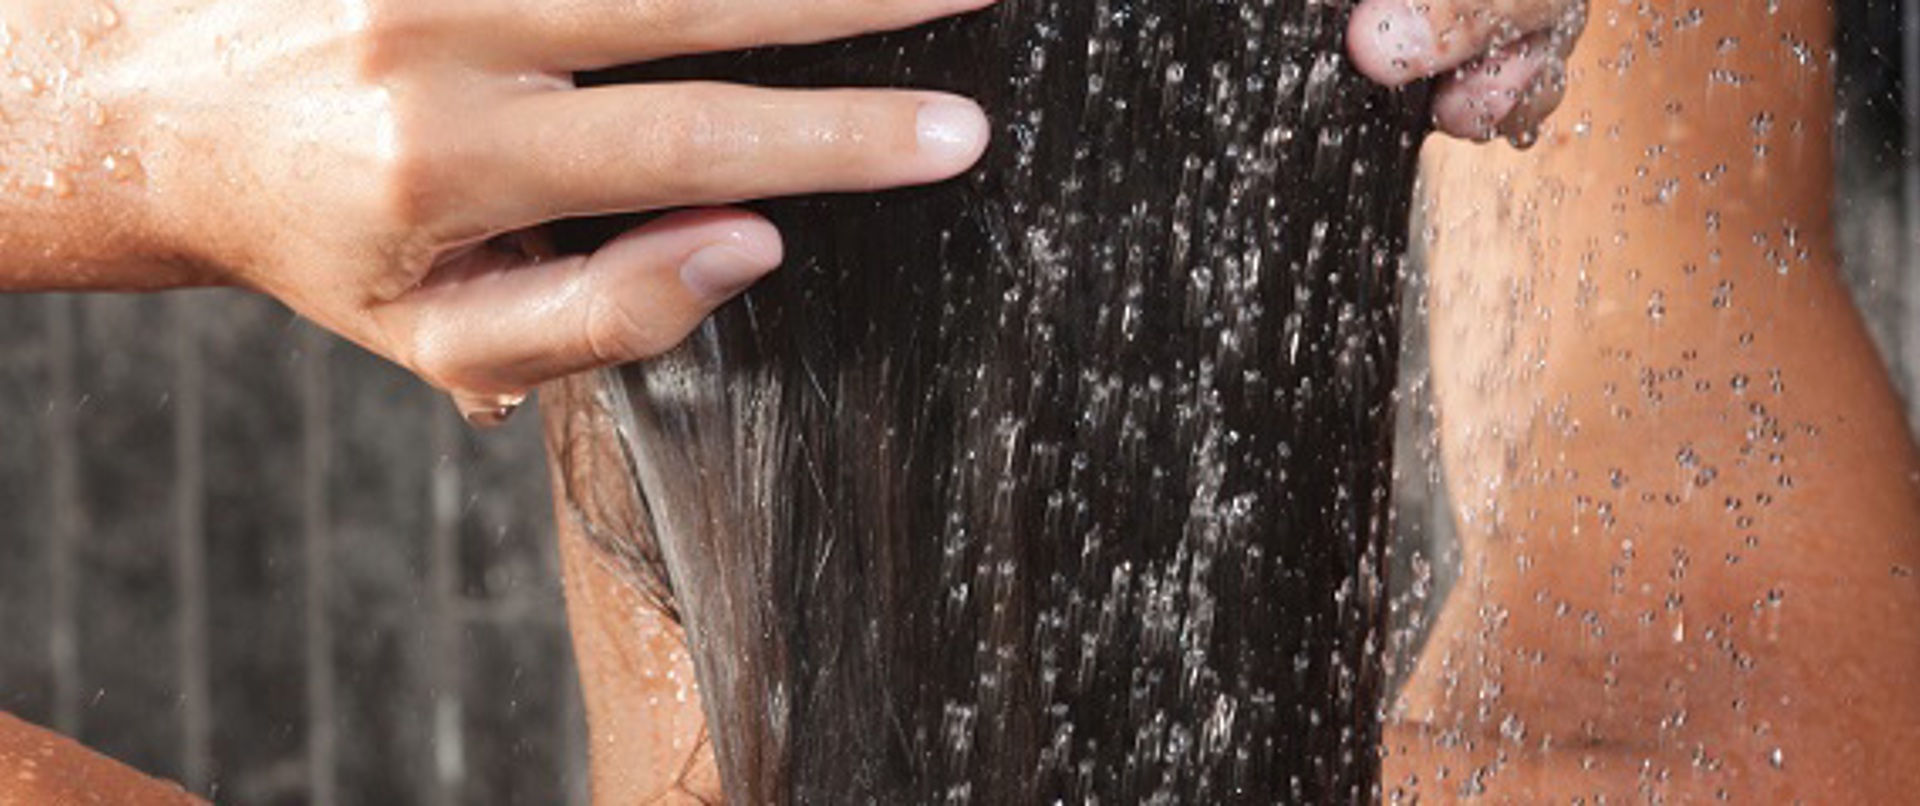 Saçlarını yıkarken dikkat etmen gereken 17 önemli nokta